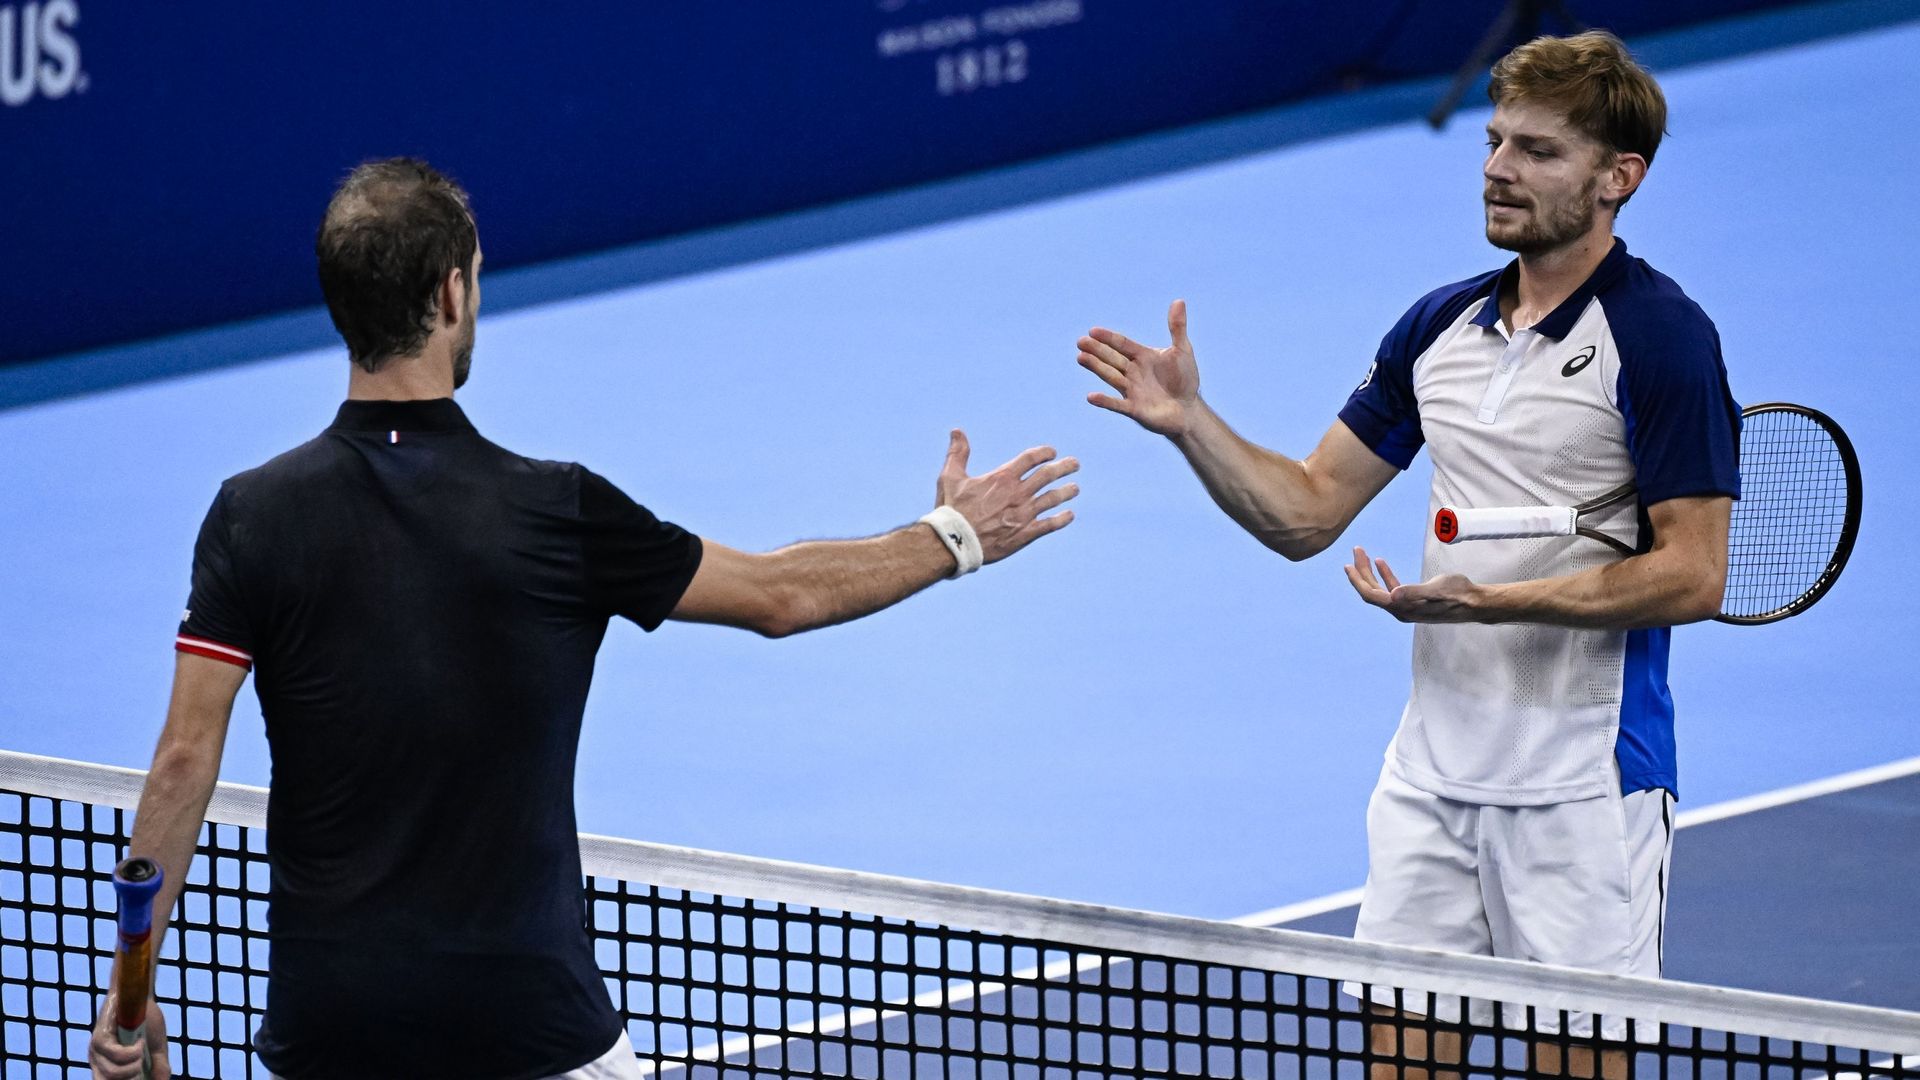 David Goffin (ATP 58) ne jouera les demi-finales de l’European Open, de l’European Open, le tournoi ATP 250 d’Anvers, joué sur surface dure et doté 648.130 euros, après sa défaite en quarts de finale vendredi contre le Français Richard Gasquet.